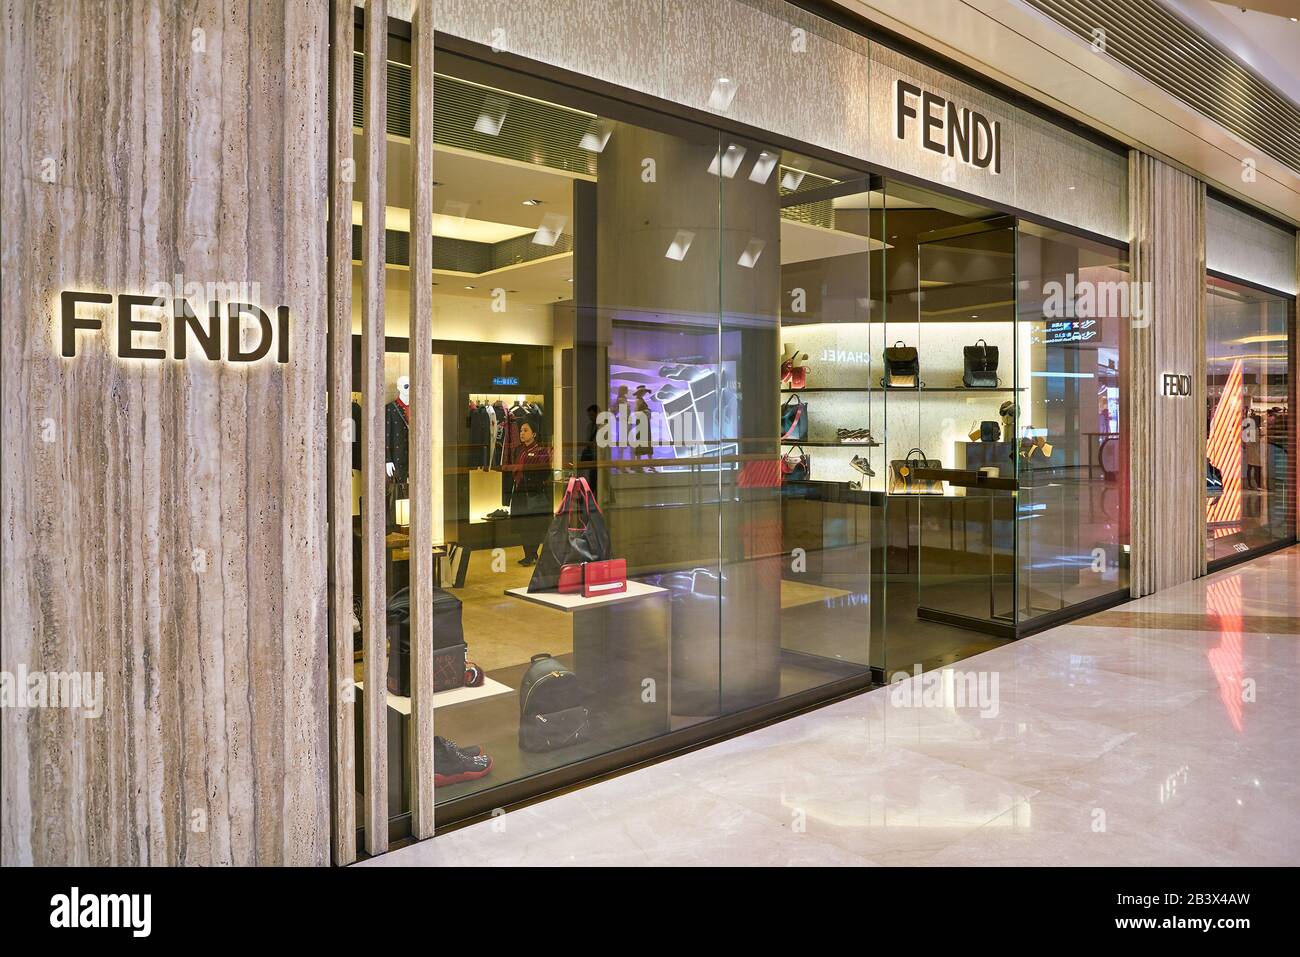 HONG KONG, CHINA - CIRCA JANUARY, 2019: Fendi storefront in